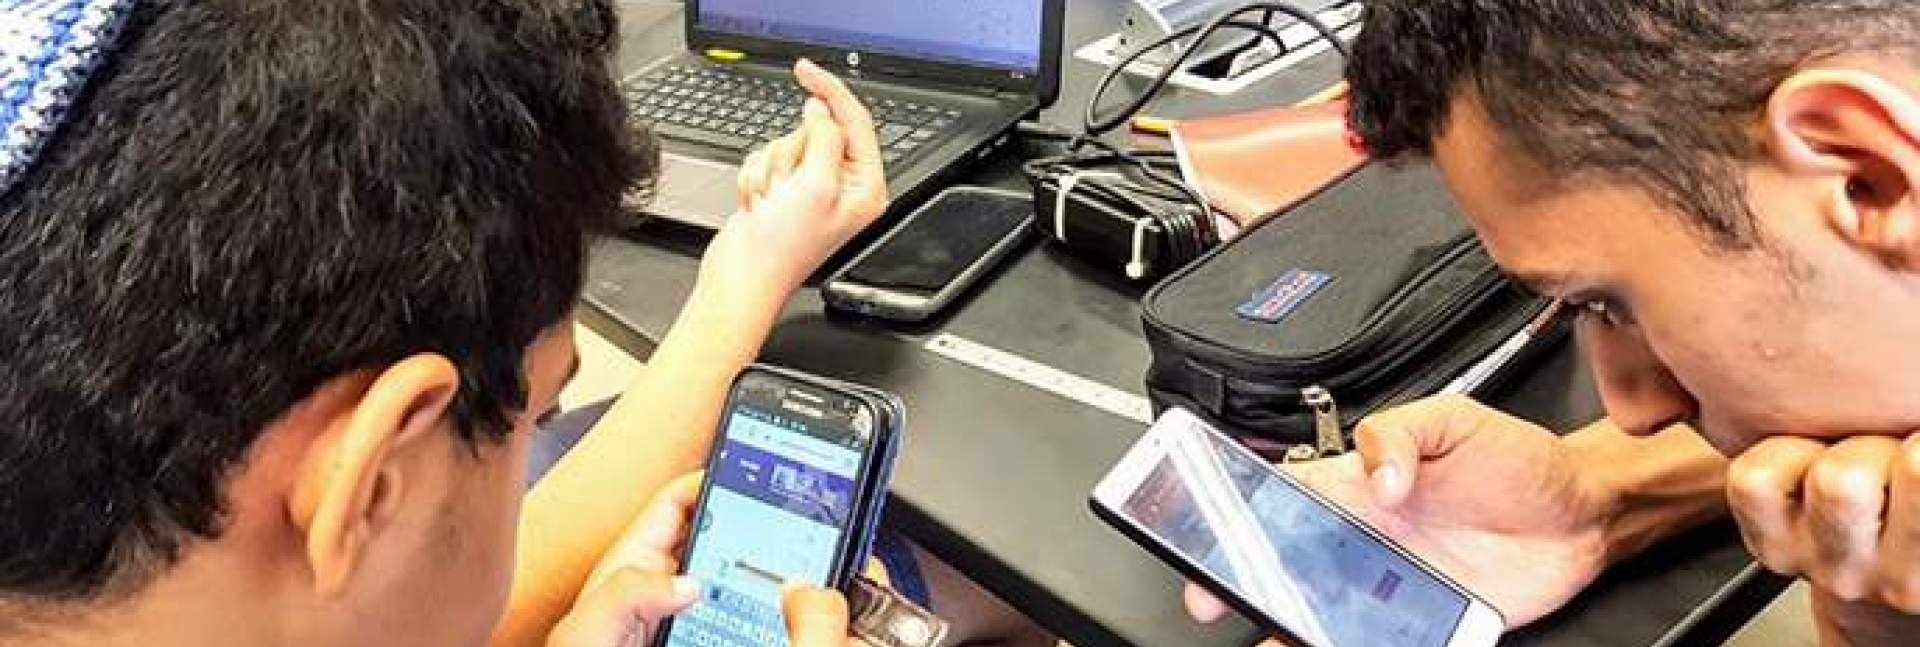 התלמידים נכנסים למערכת באמצעות סמארטפונים, טאבלטים או מחשבים ניידים, ומקבלים משוב מיידי על עבודתם